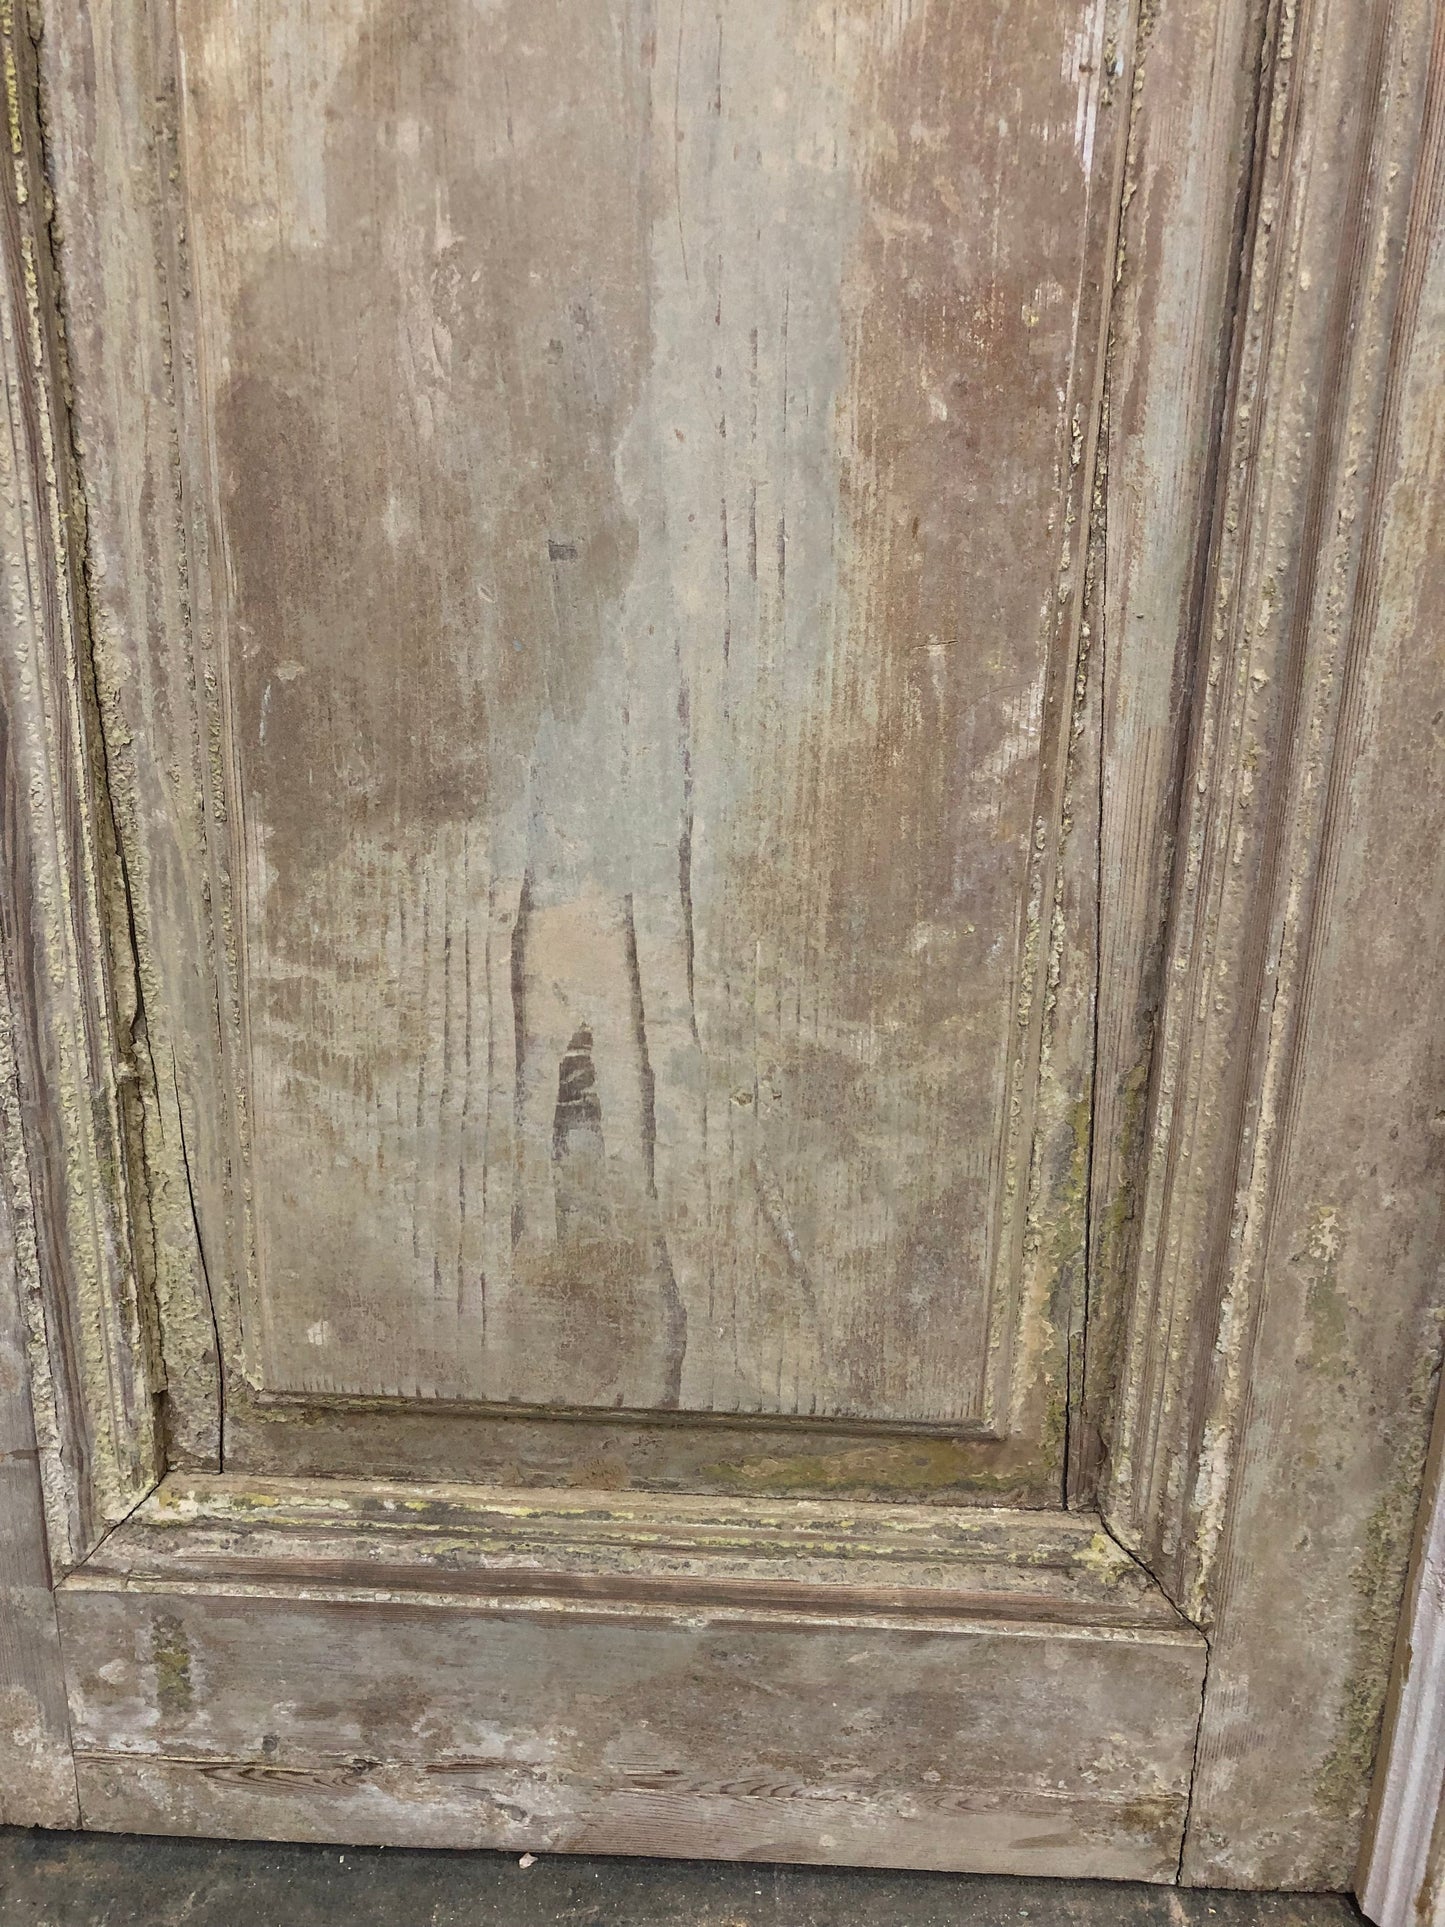 Antique French Double Doors (39.5x96.5) Raised Panel Doors, European Doors A297